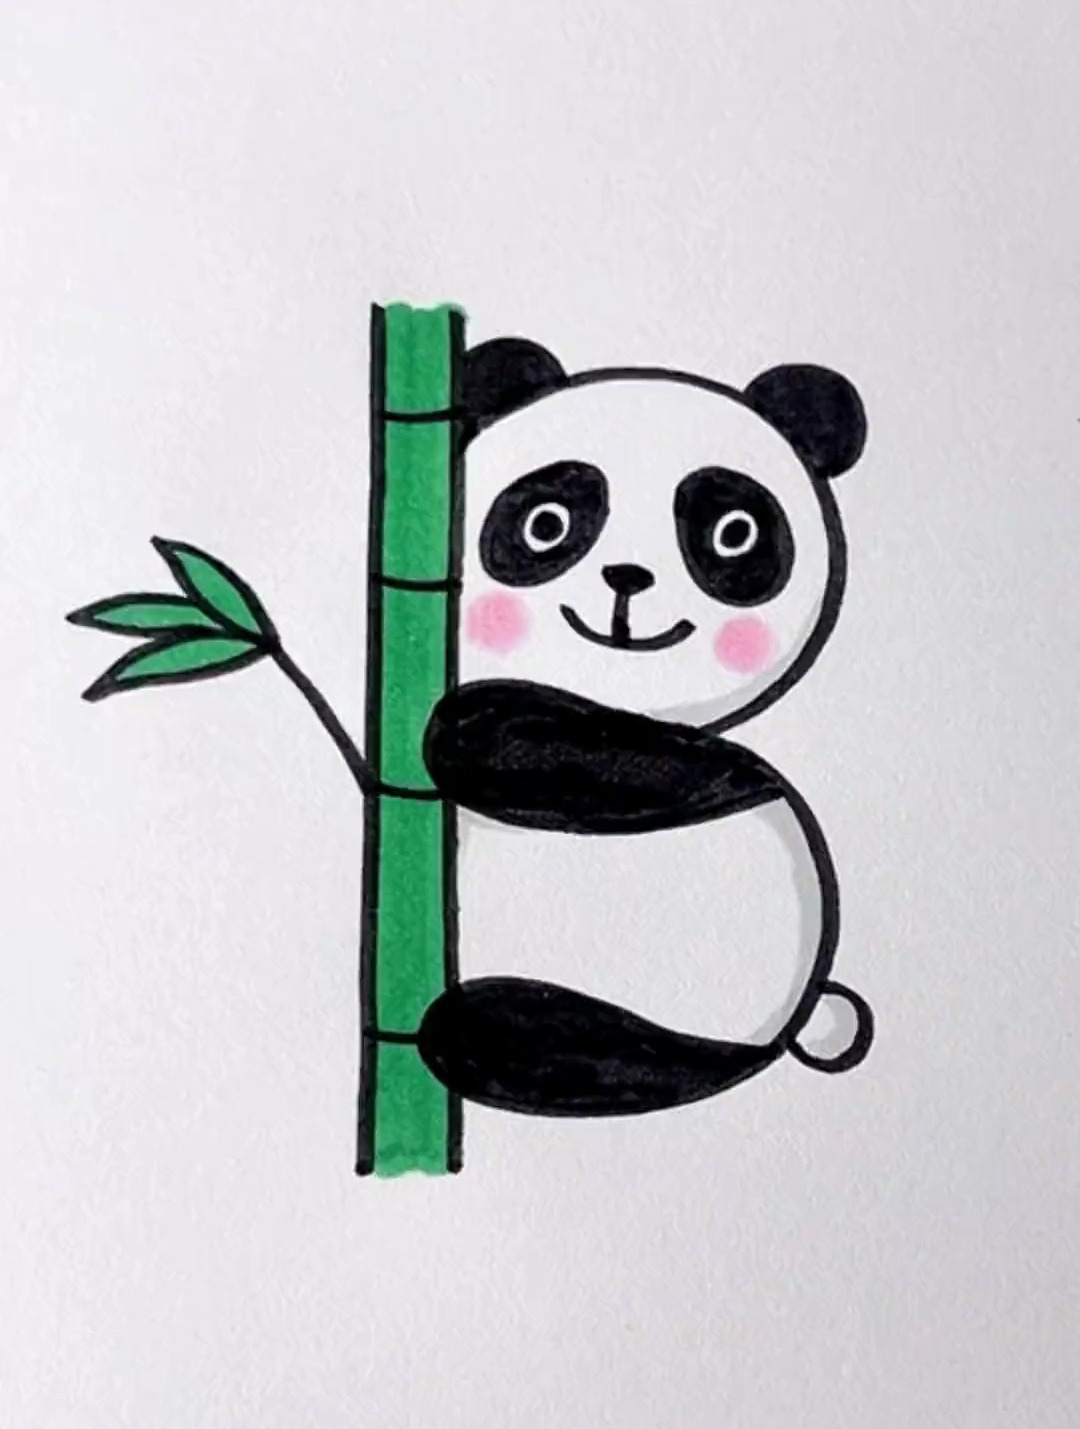 大熊猫的简笔画彩色图片